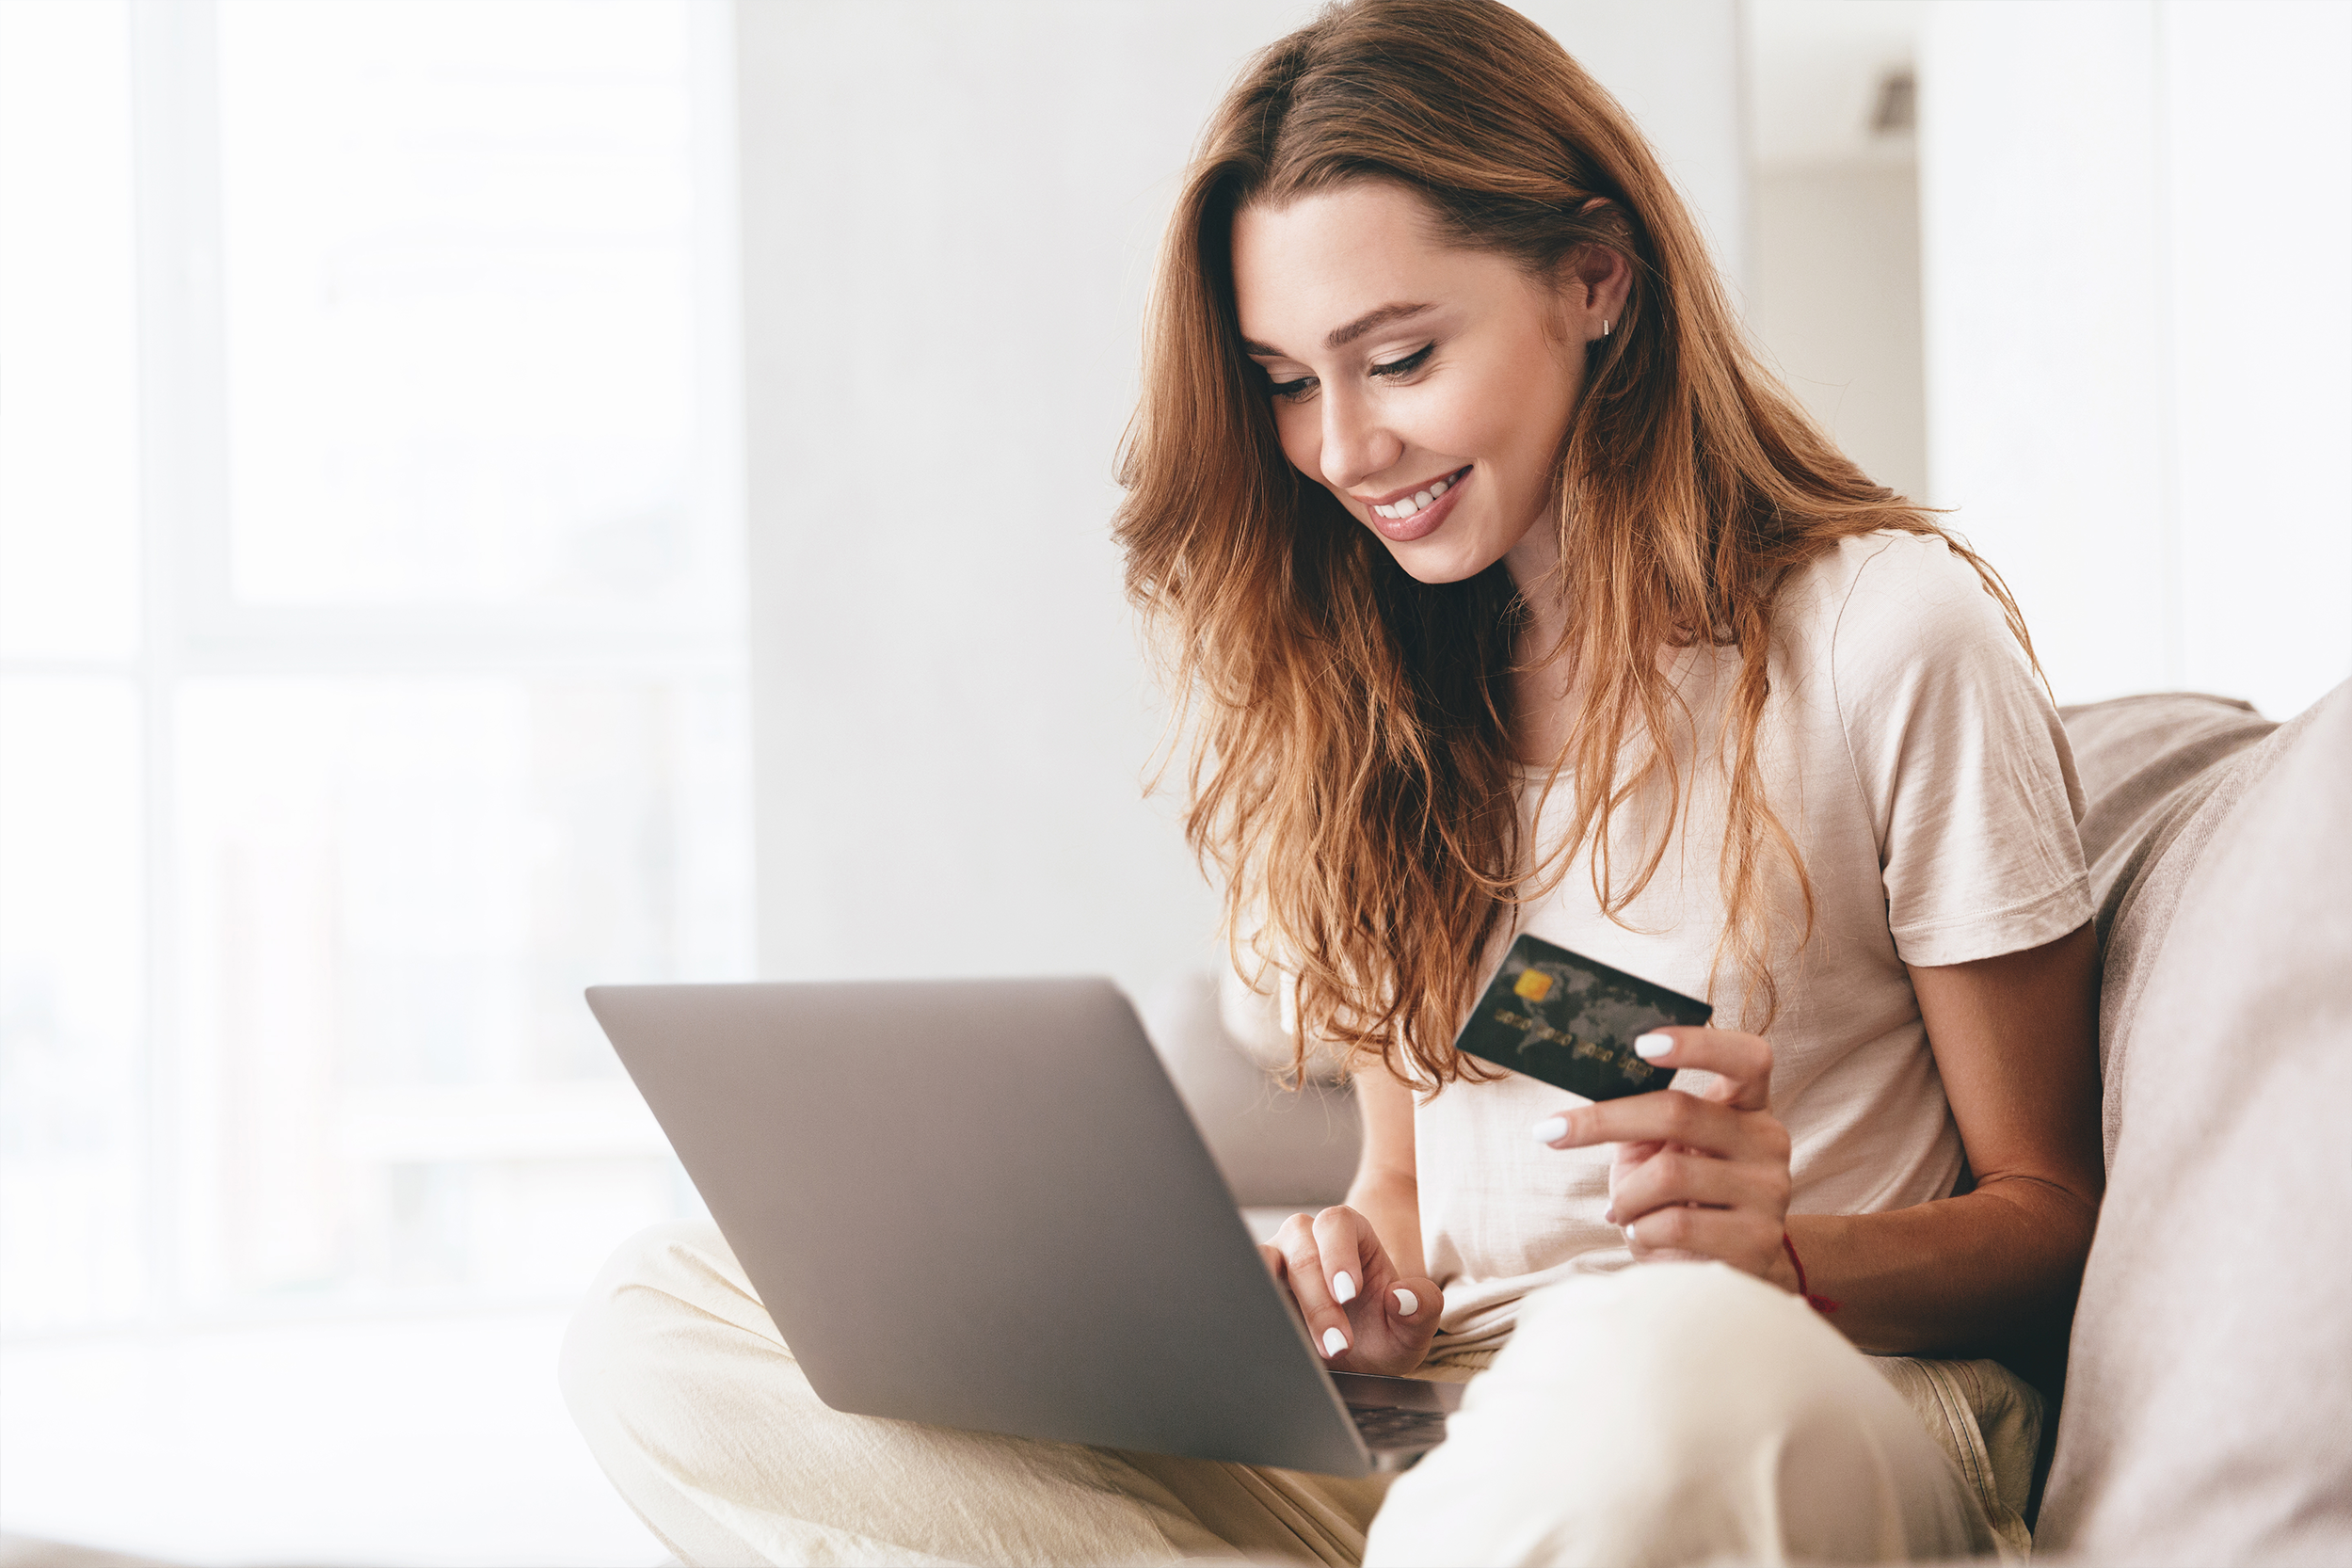 Empieza tu viaje financiero con confianza: Lo esencial al solicitar tu primera tarjeta de crédito.